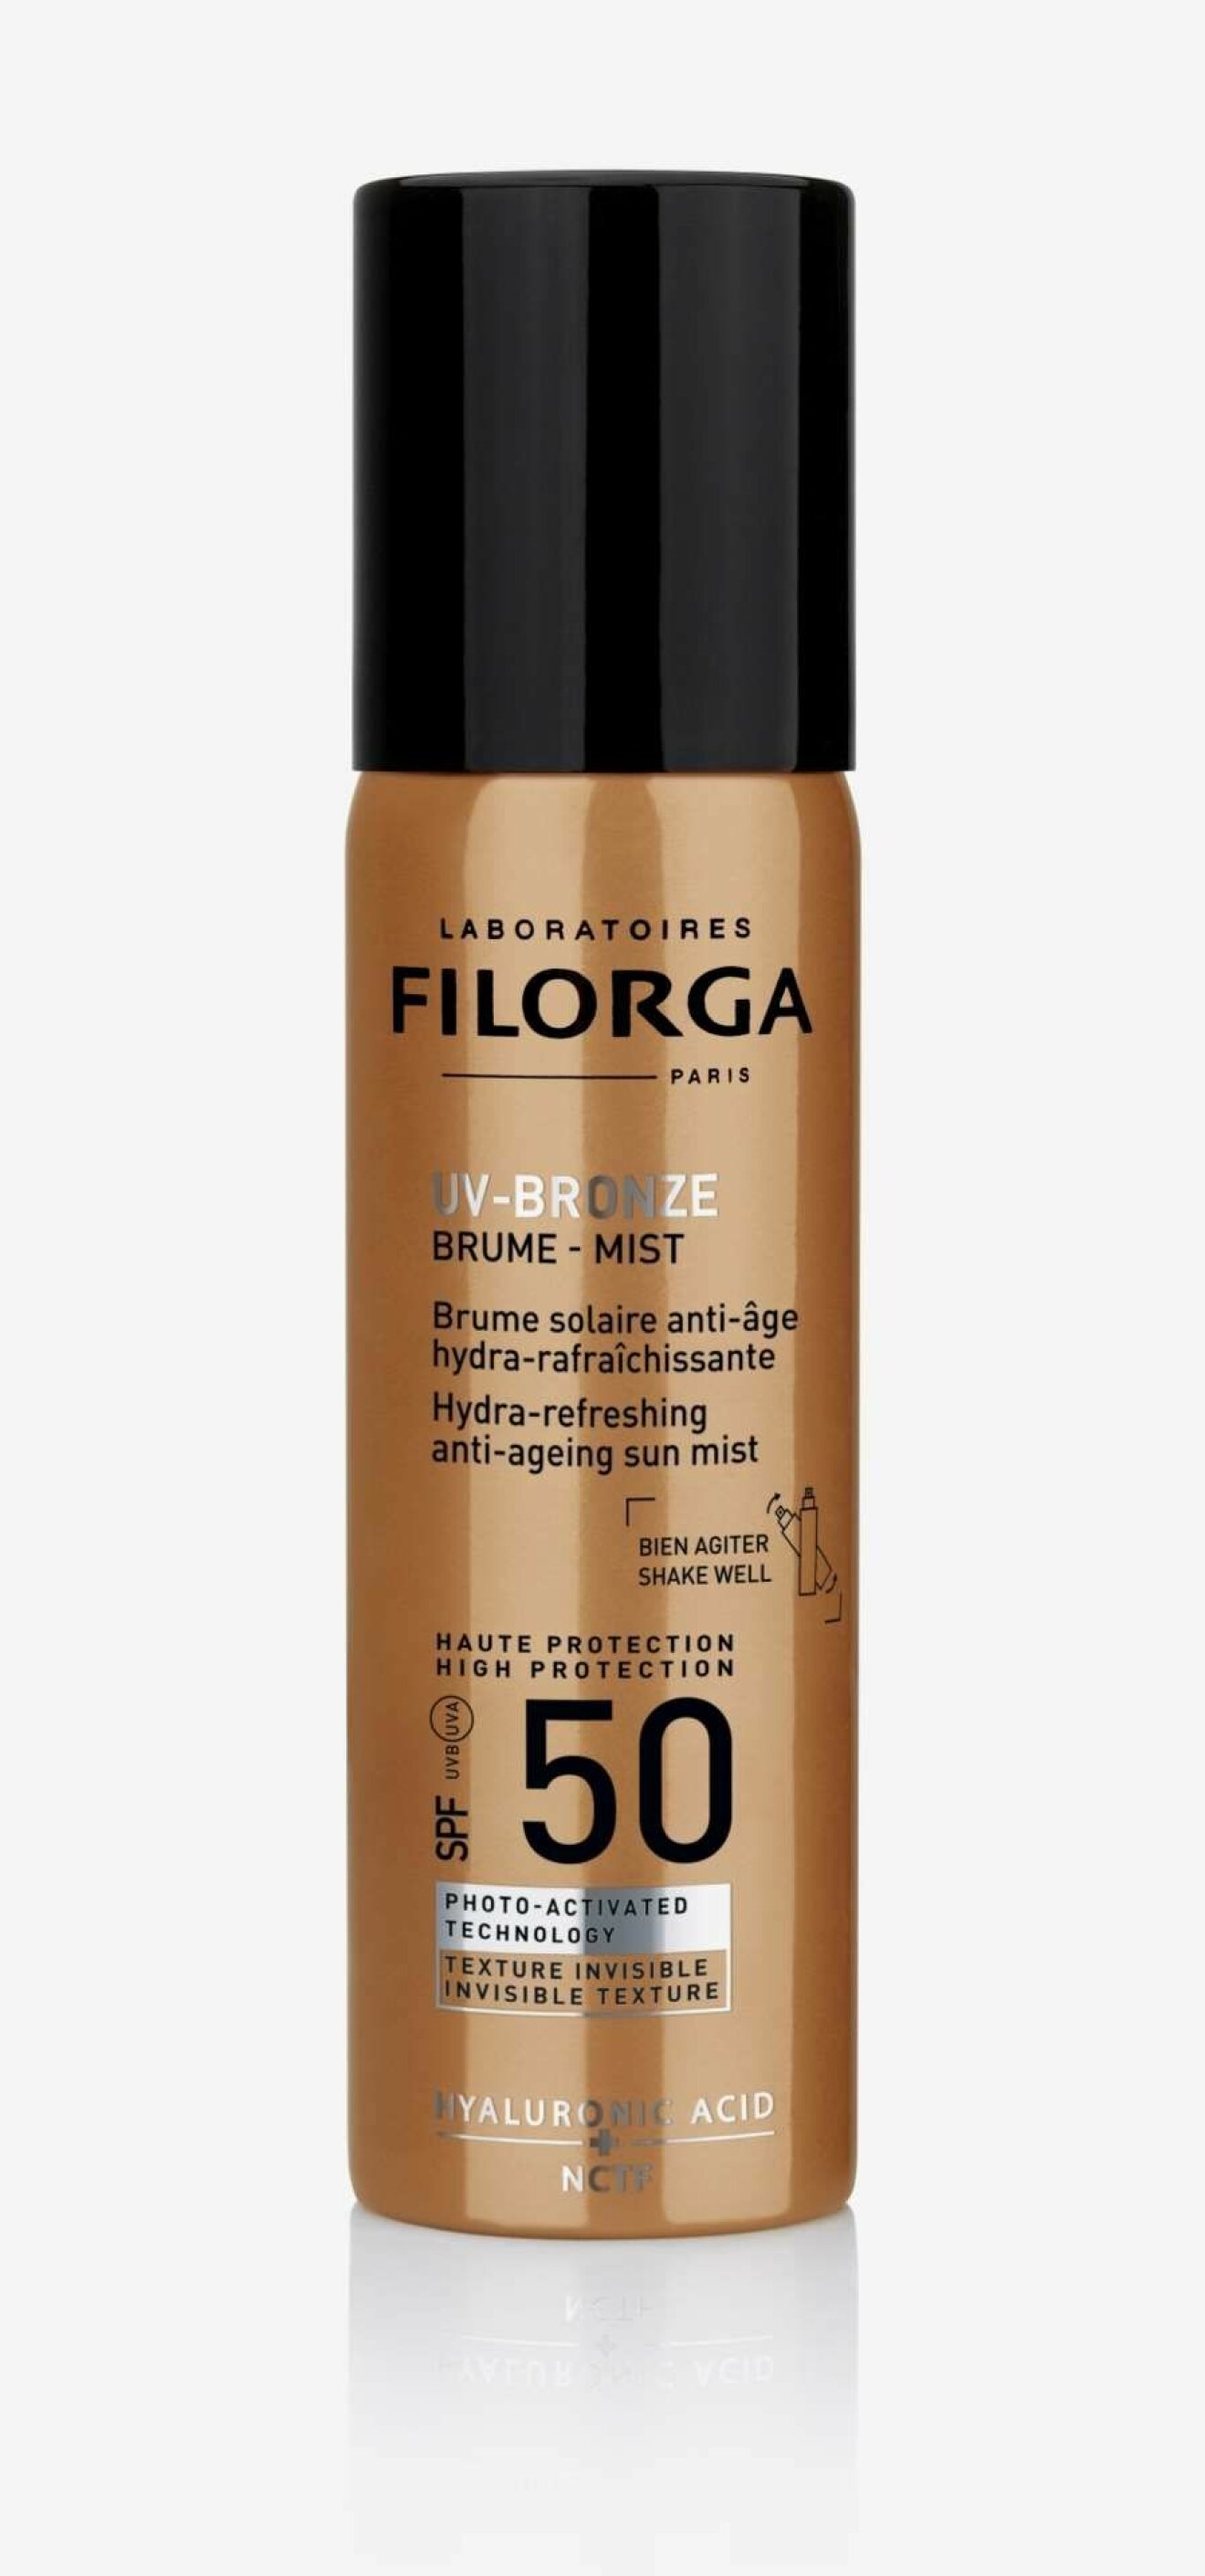  Filorgas UV-bronze mist.